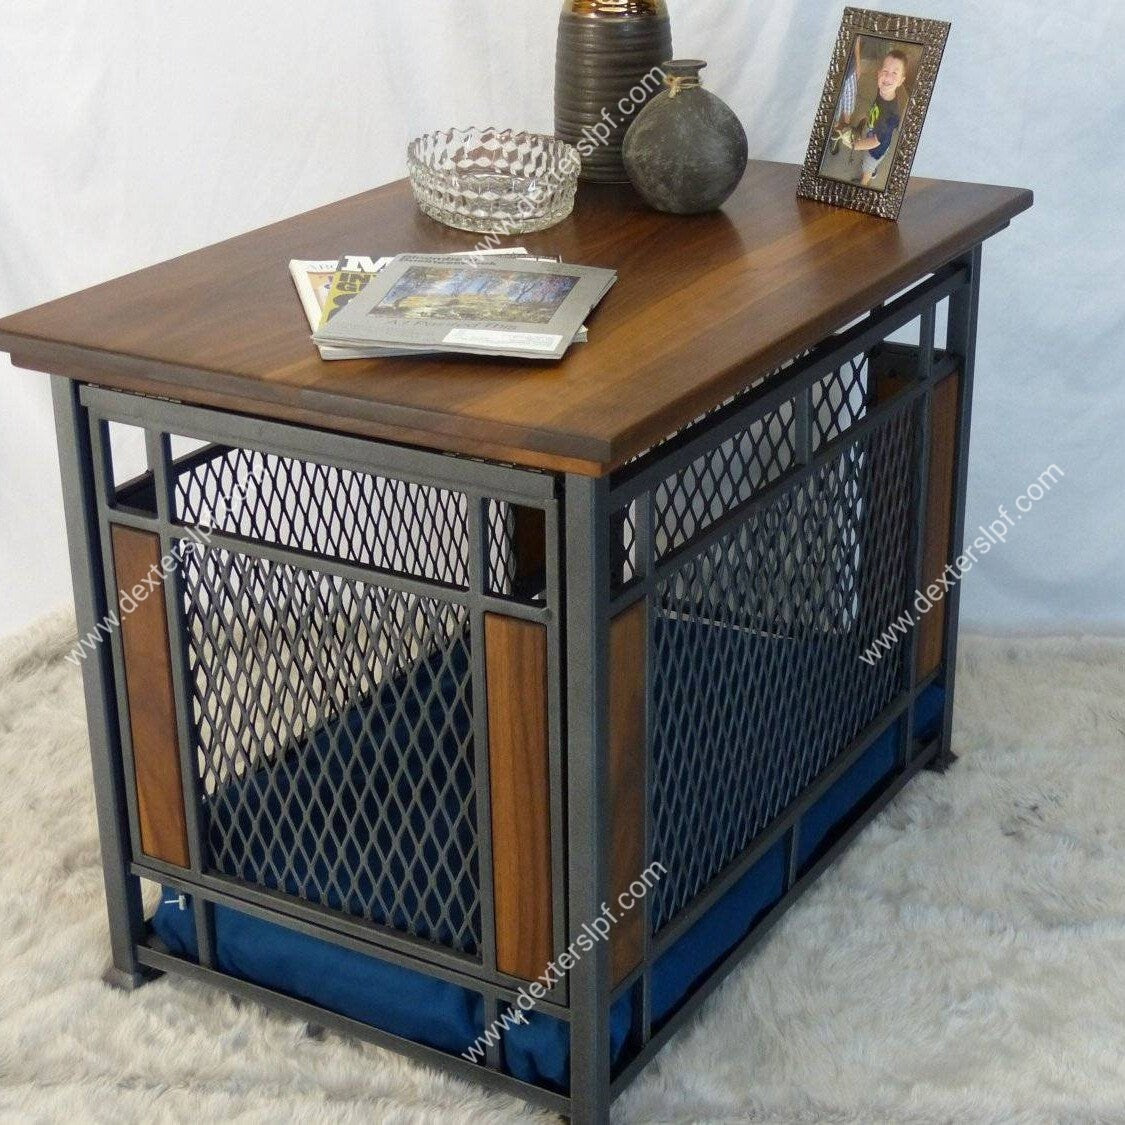 Raven Medium Dog Crate Furniture, Dog Kennel Furniture, Dog Crate End Table, Dog Crate Table, Modern Dog Crate